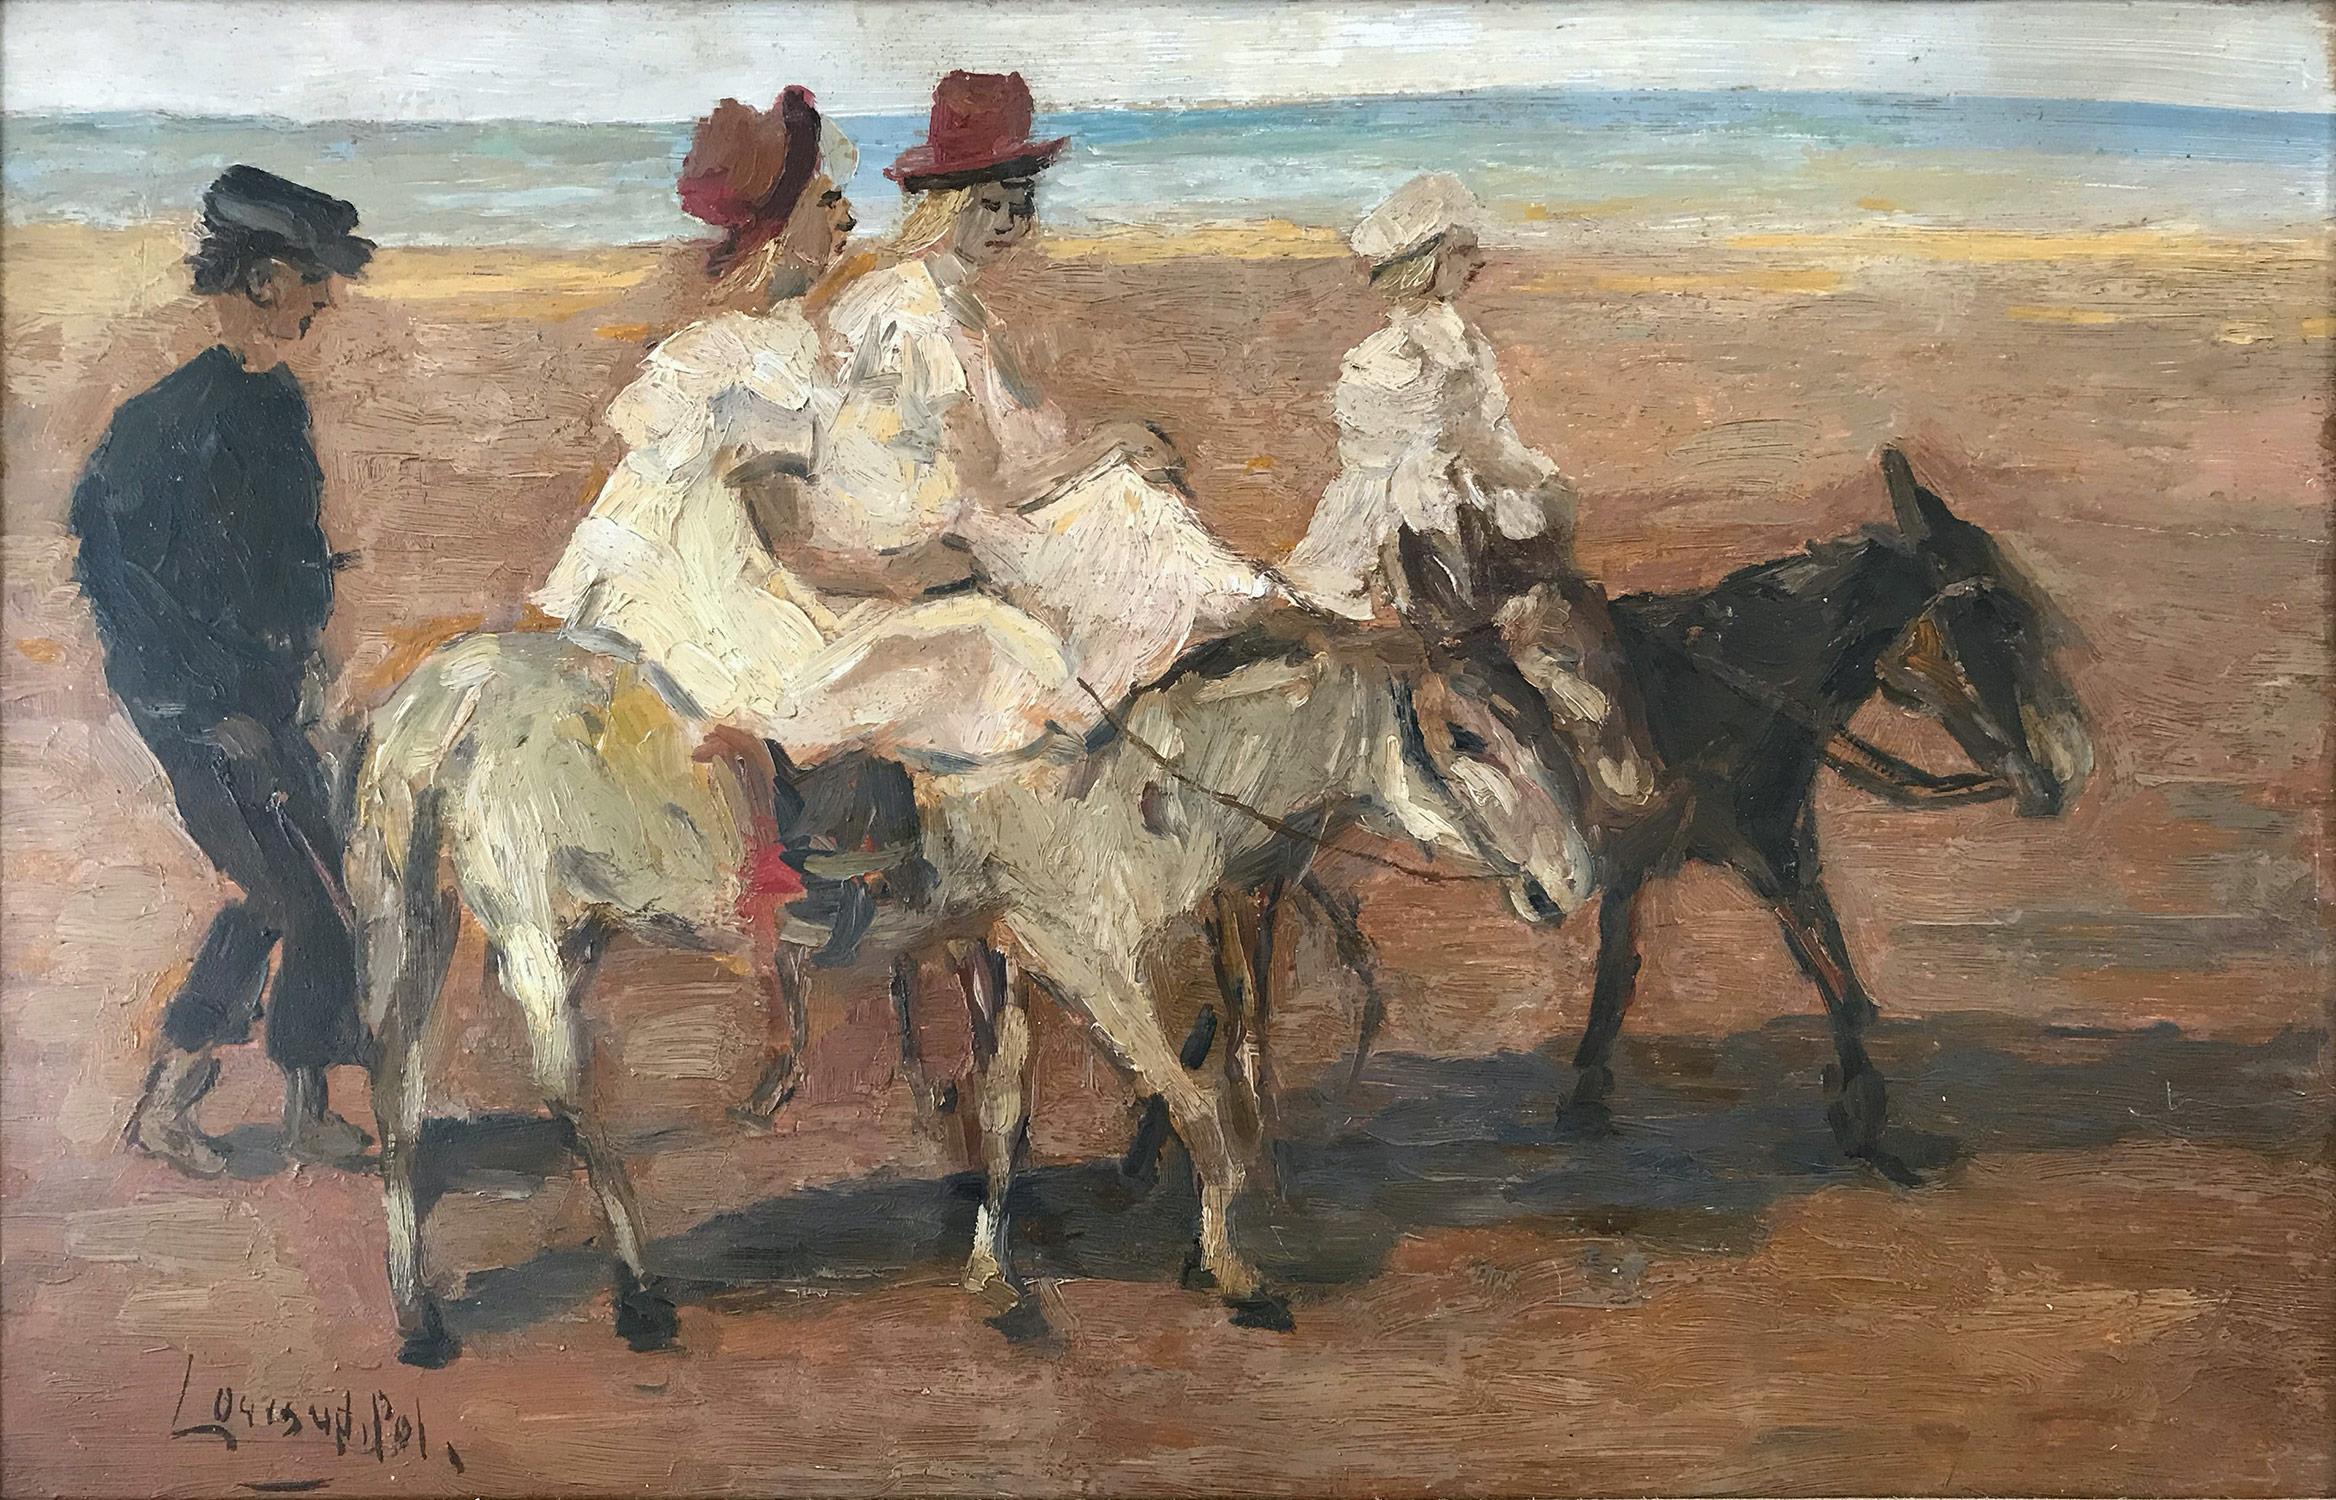 Romantisches Pariser Impressionistisches Ölgemälde „Horseback-Reise am Strand“  – Painting von Louis Van Der Pol